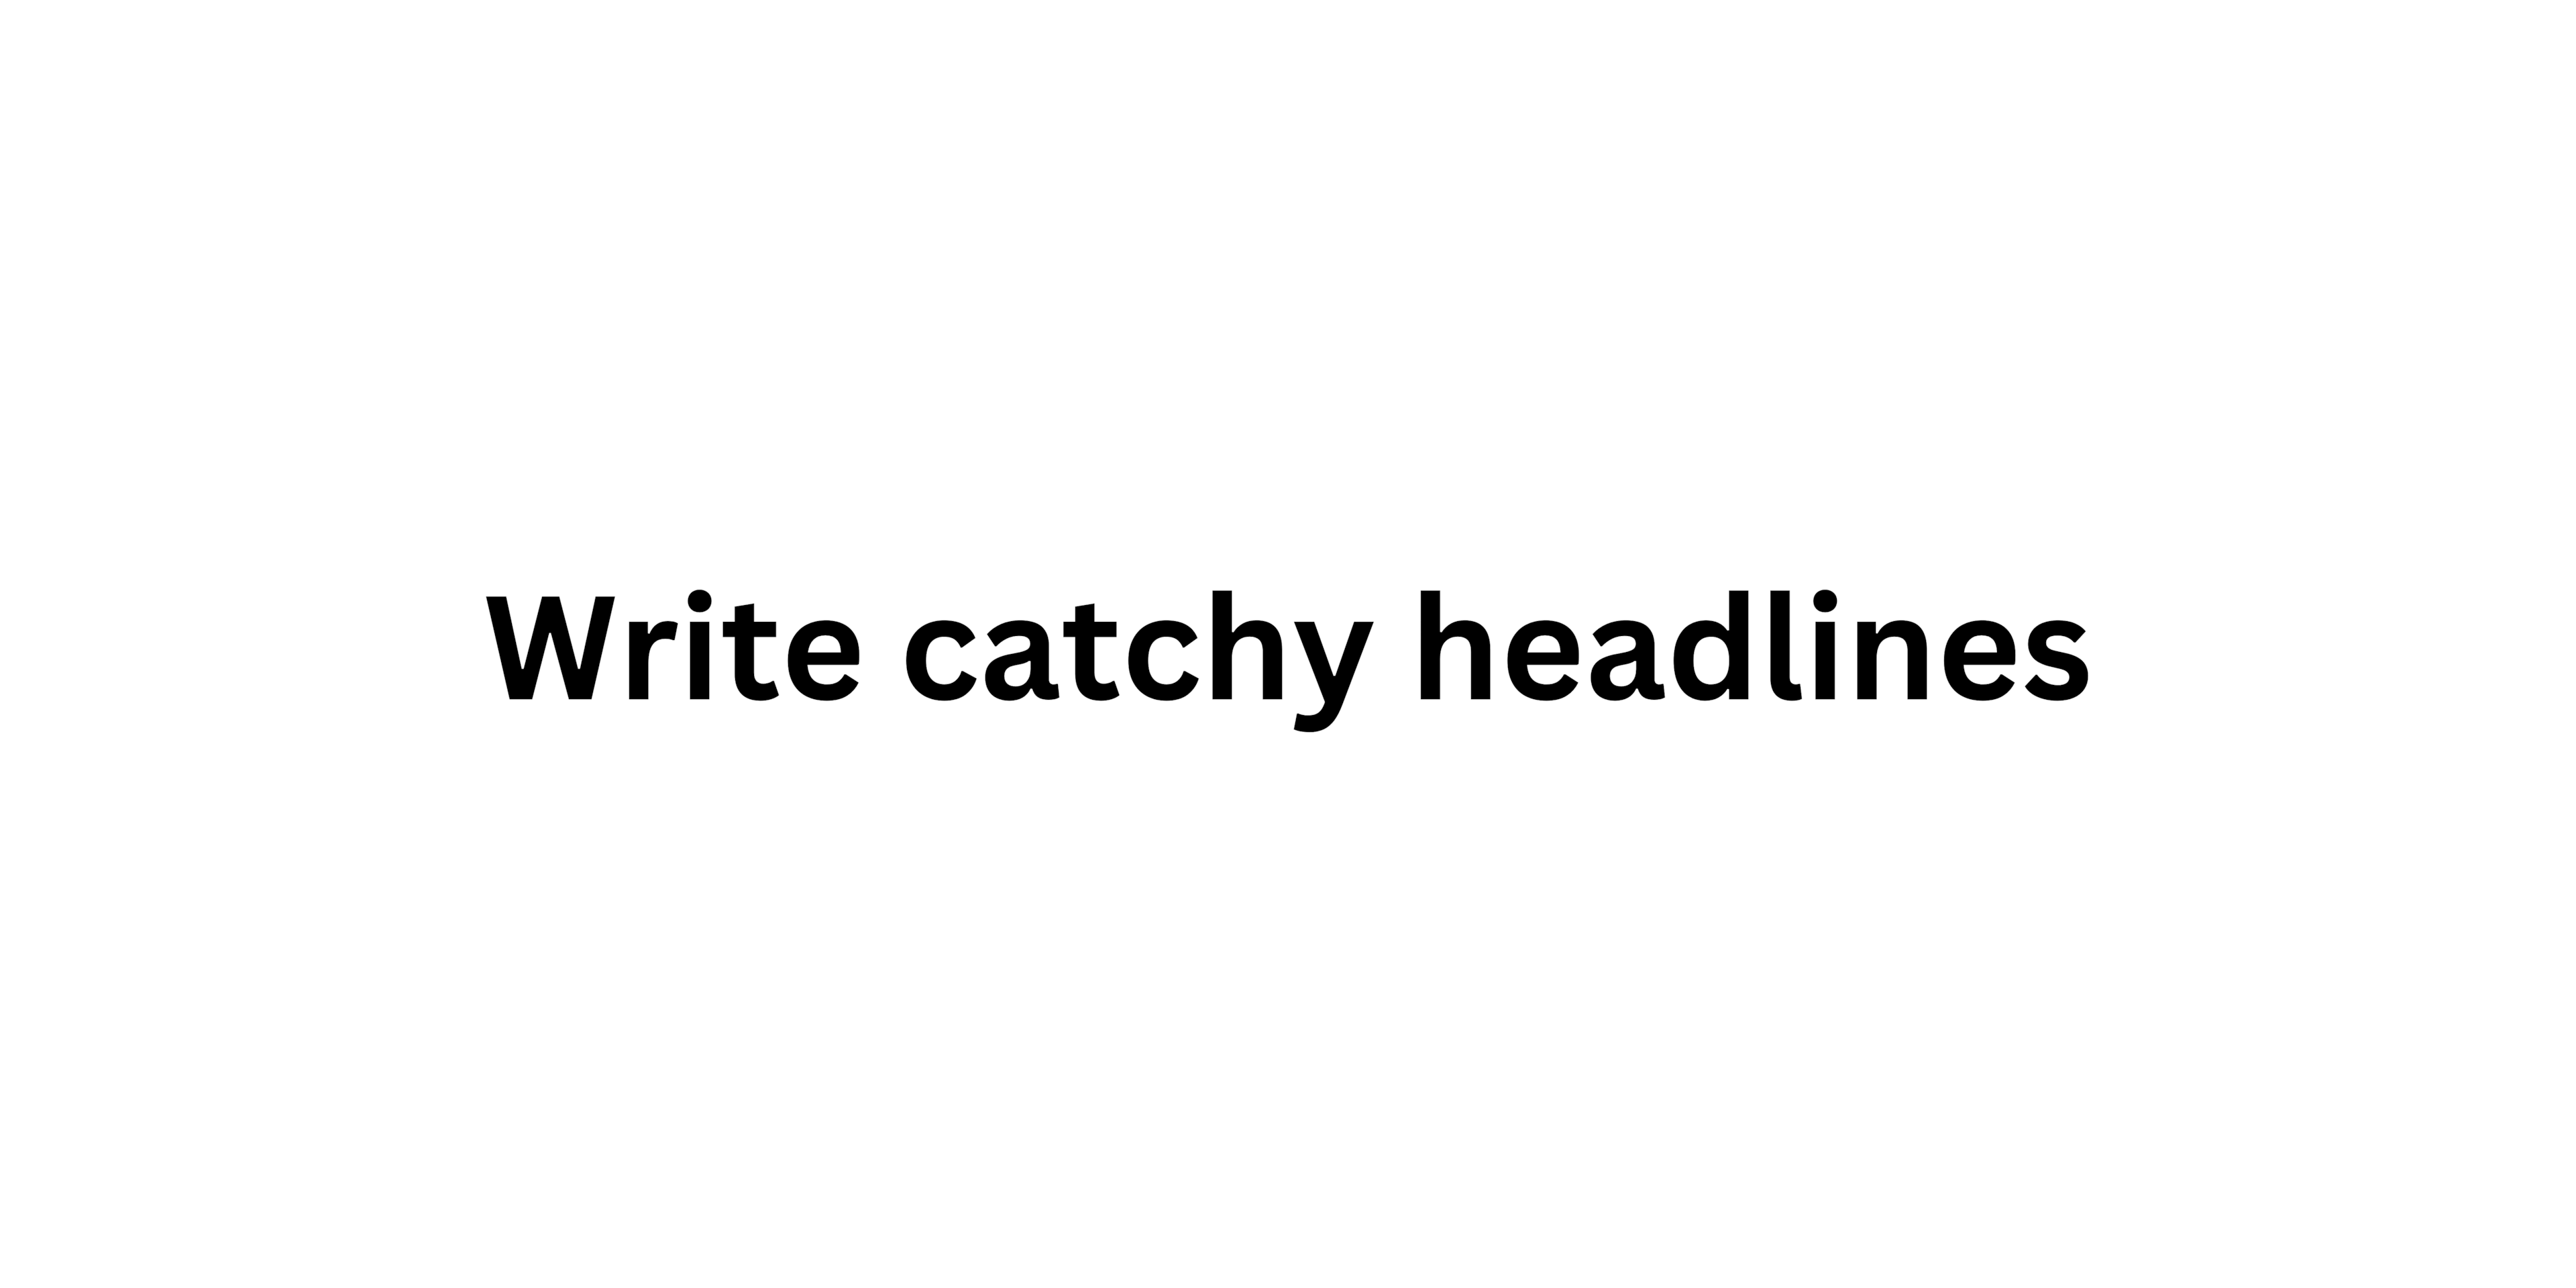 Write catchy headlines